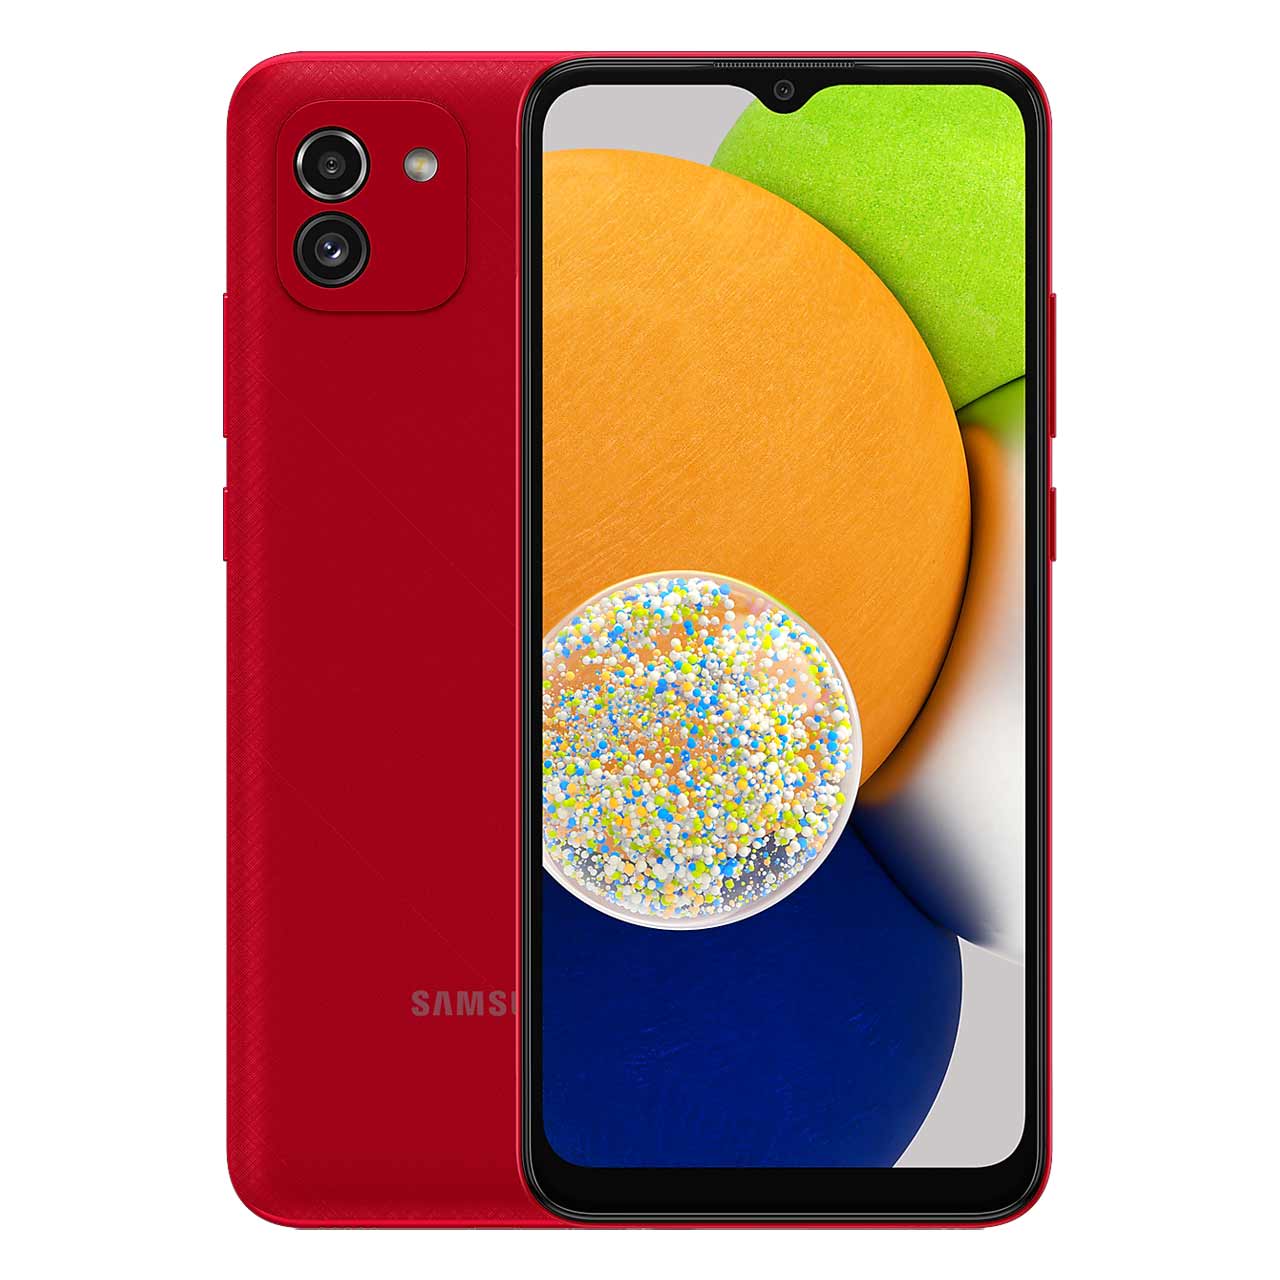  گوشی موبایل سامسونگ مدل Galaxy A03 (RAM 4) ظرفیت 64GB - قرمز     